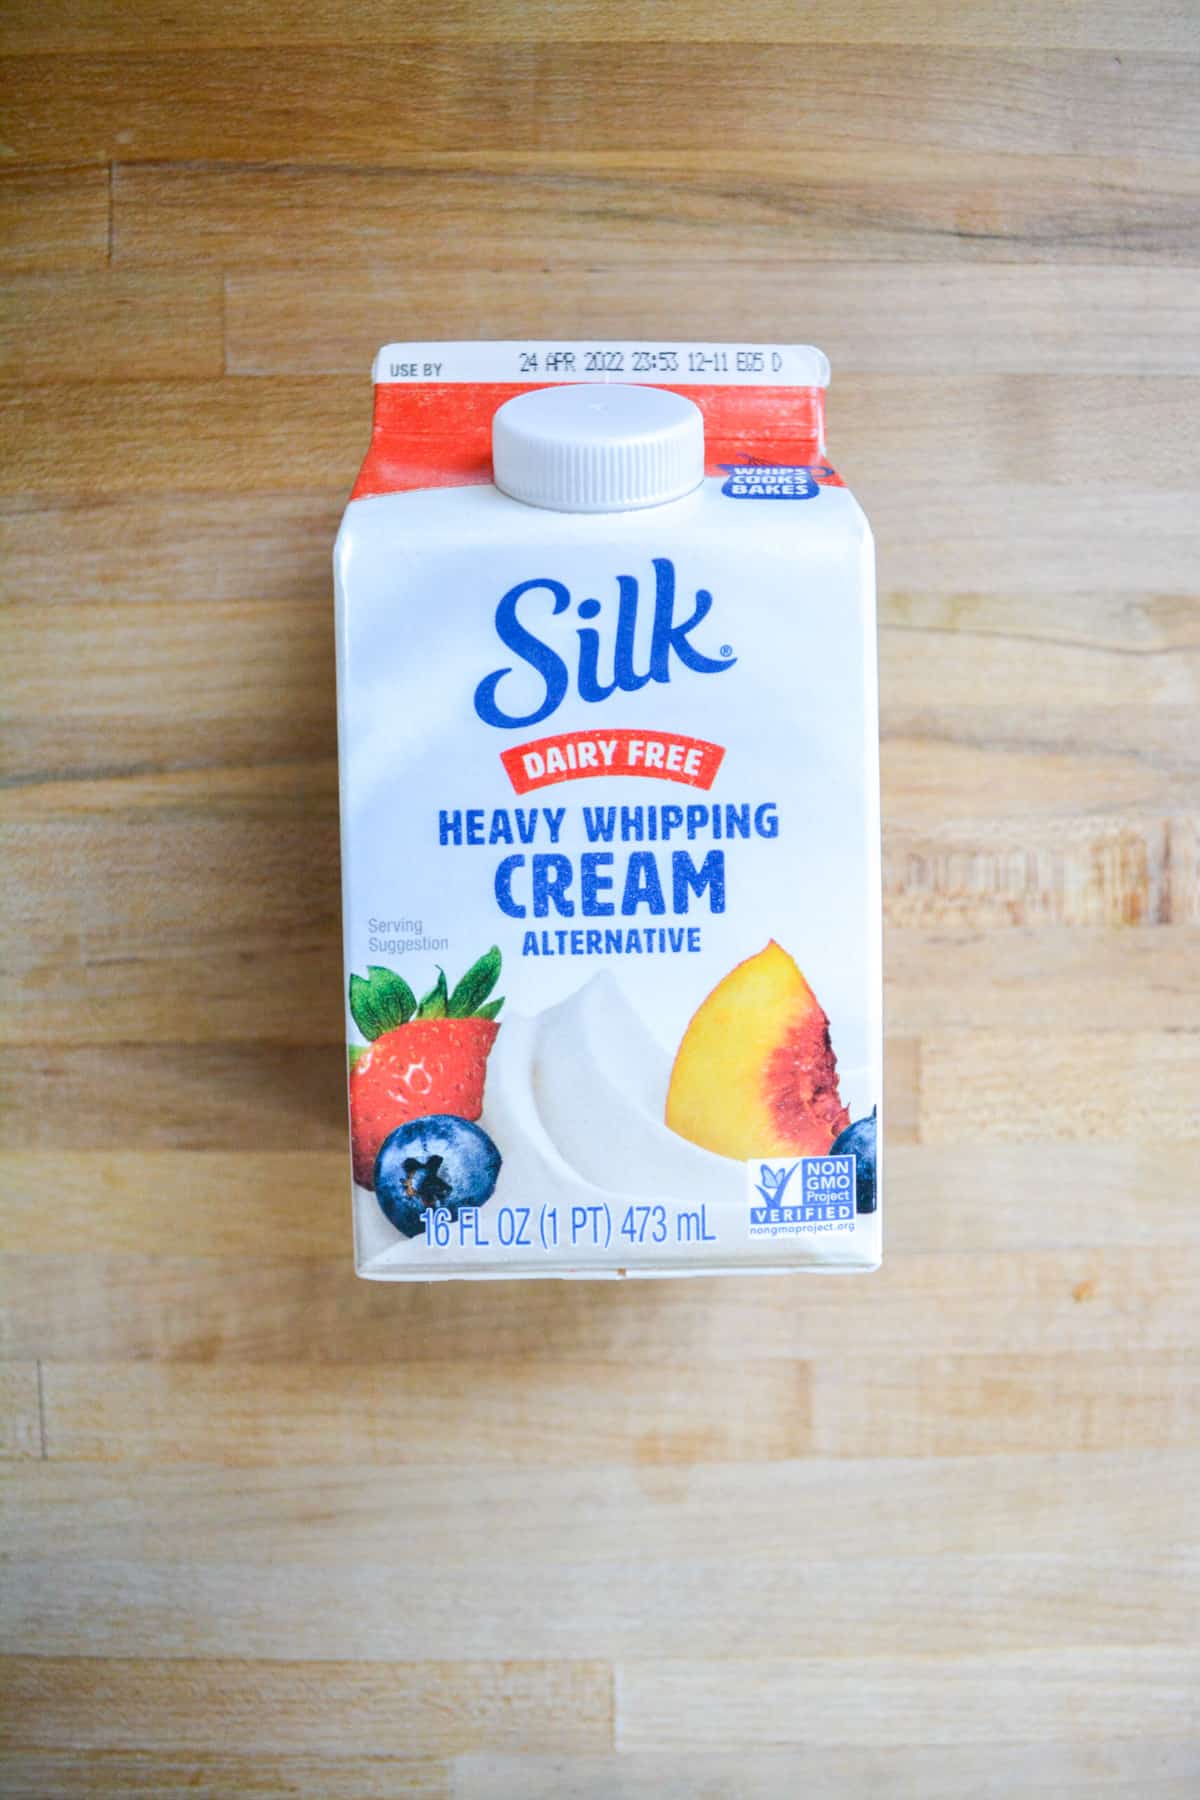 A carton of silk heavy whipping cream